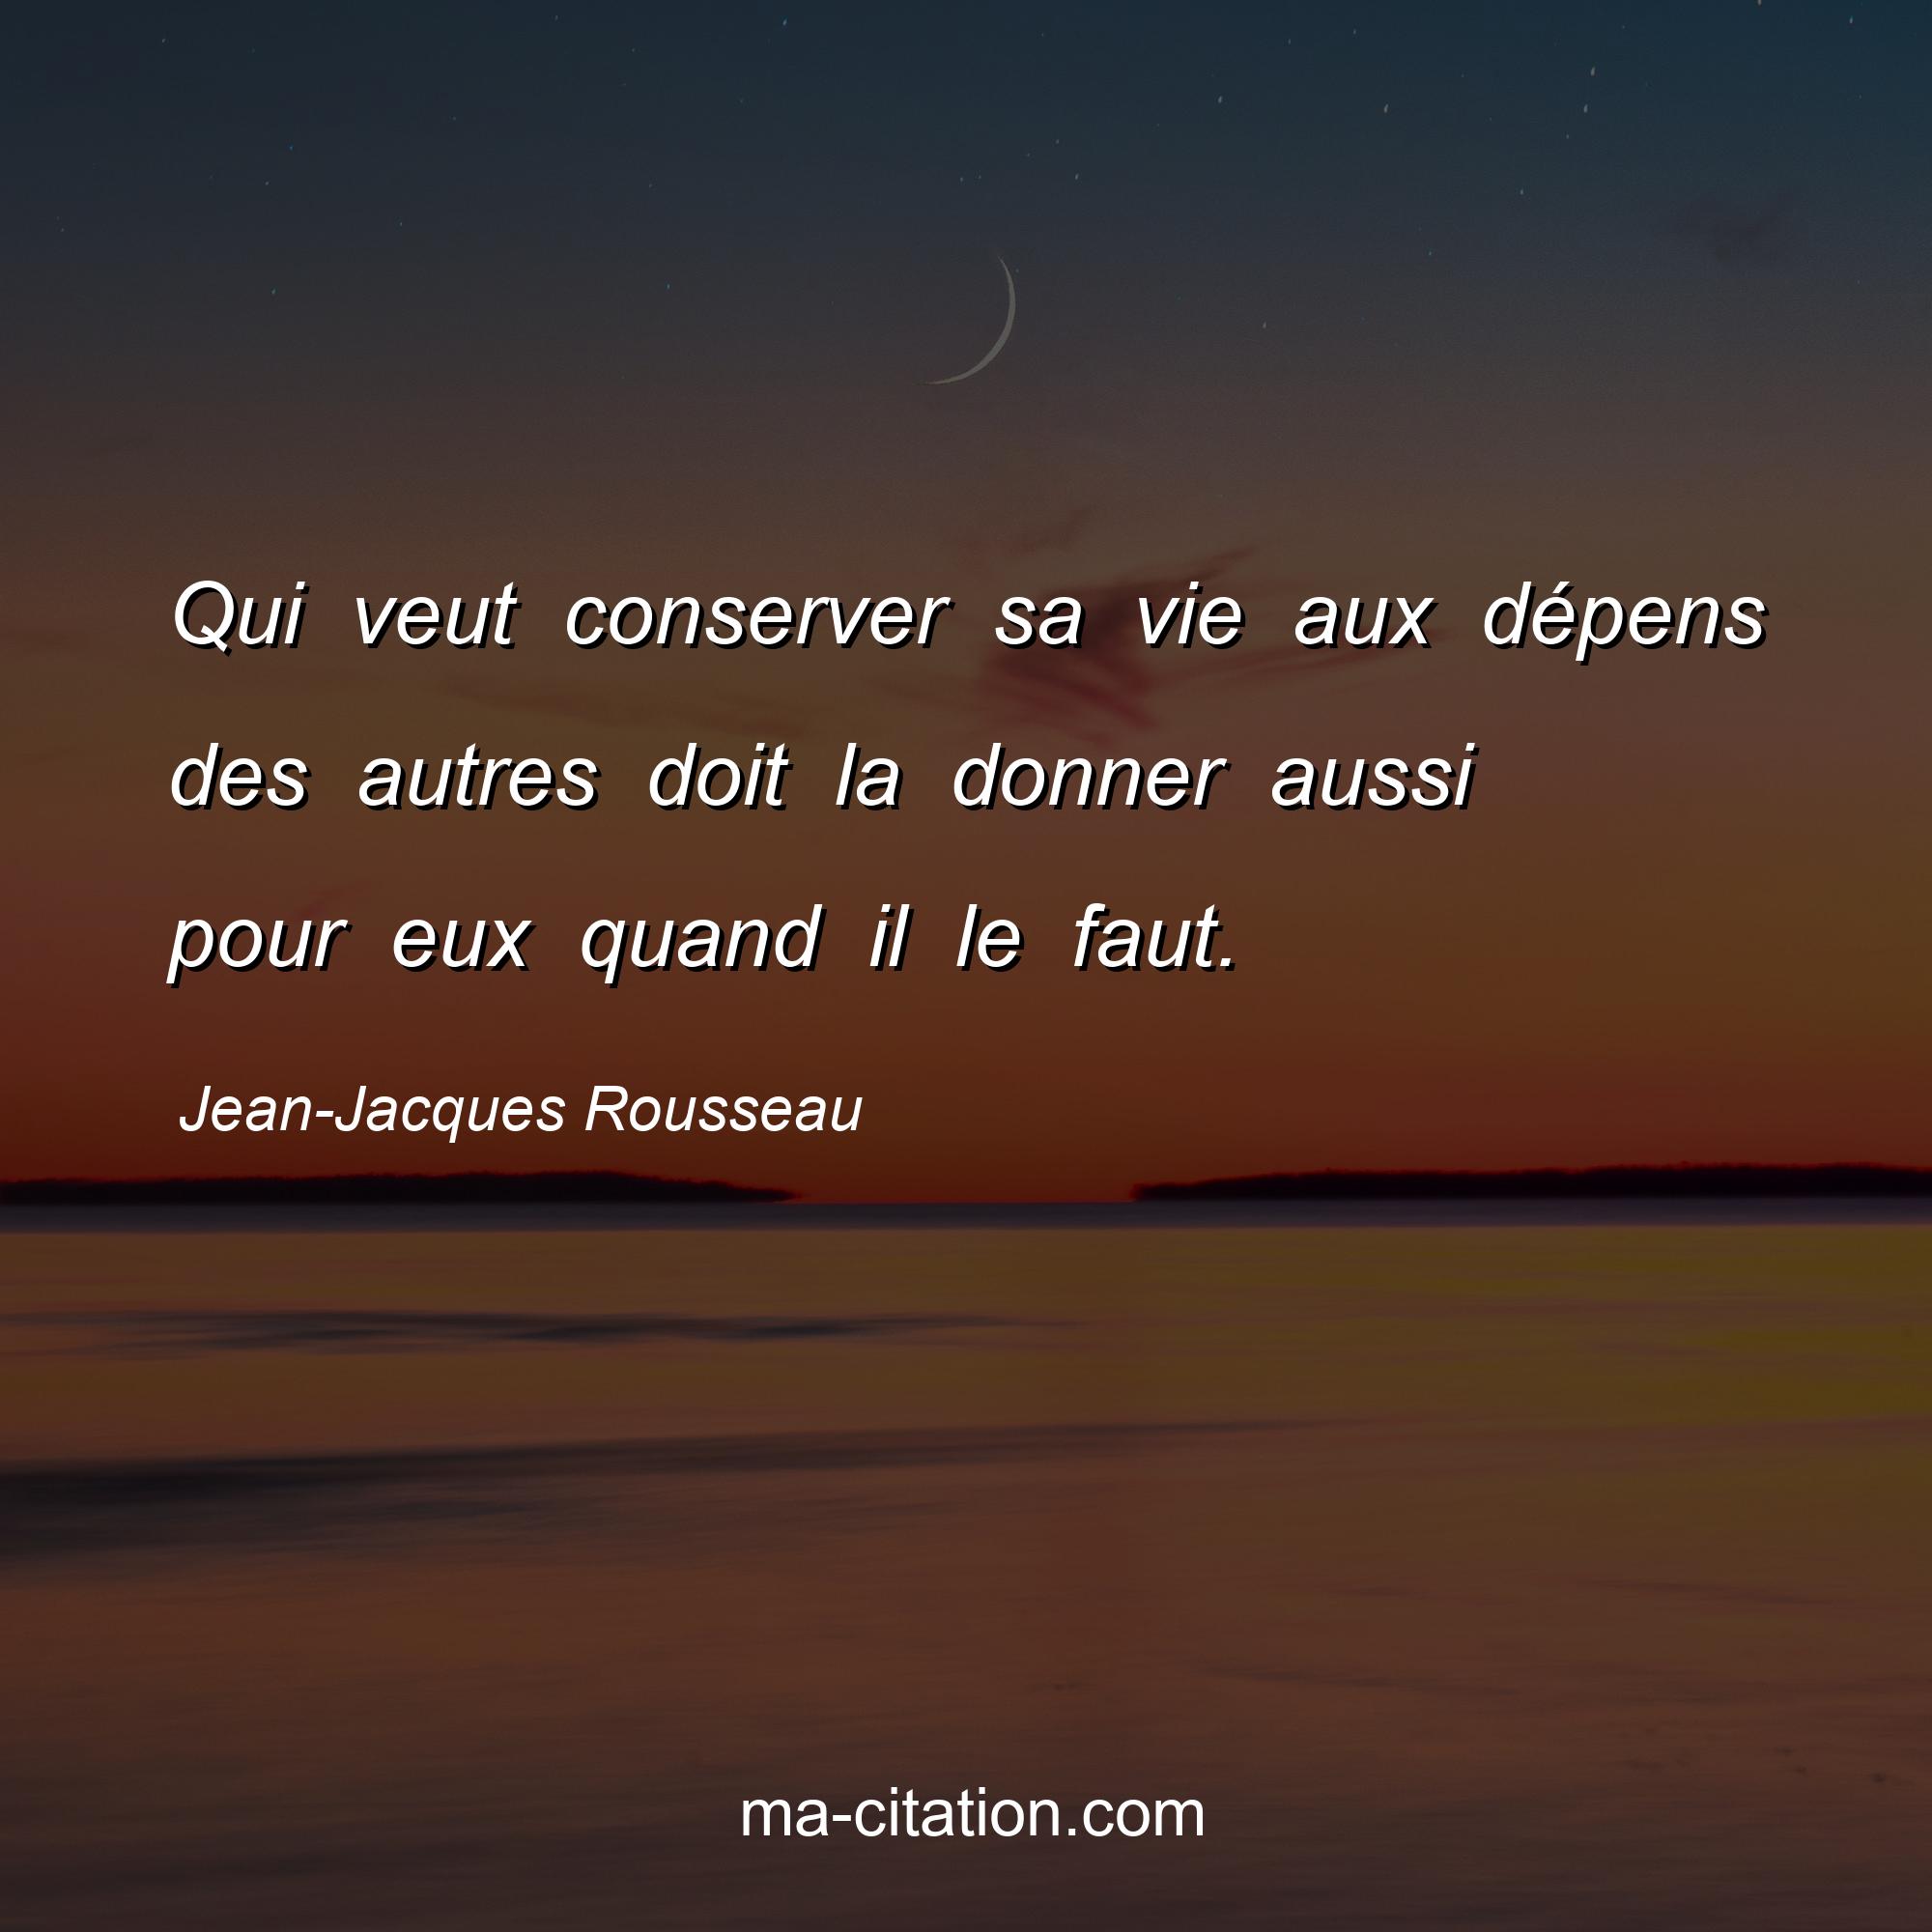 Jean-Jacques Rousseau : Qui veut conserver sa vie aux dépens des autres doit la donner aussi pour eux quand il le faut.